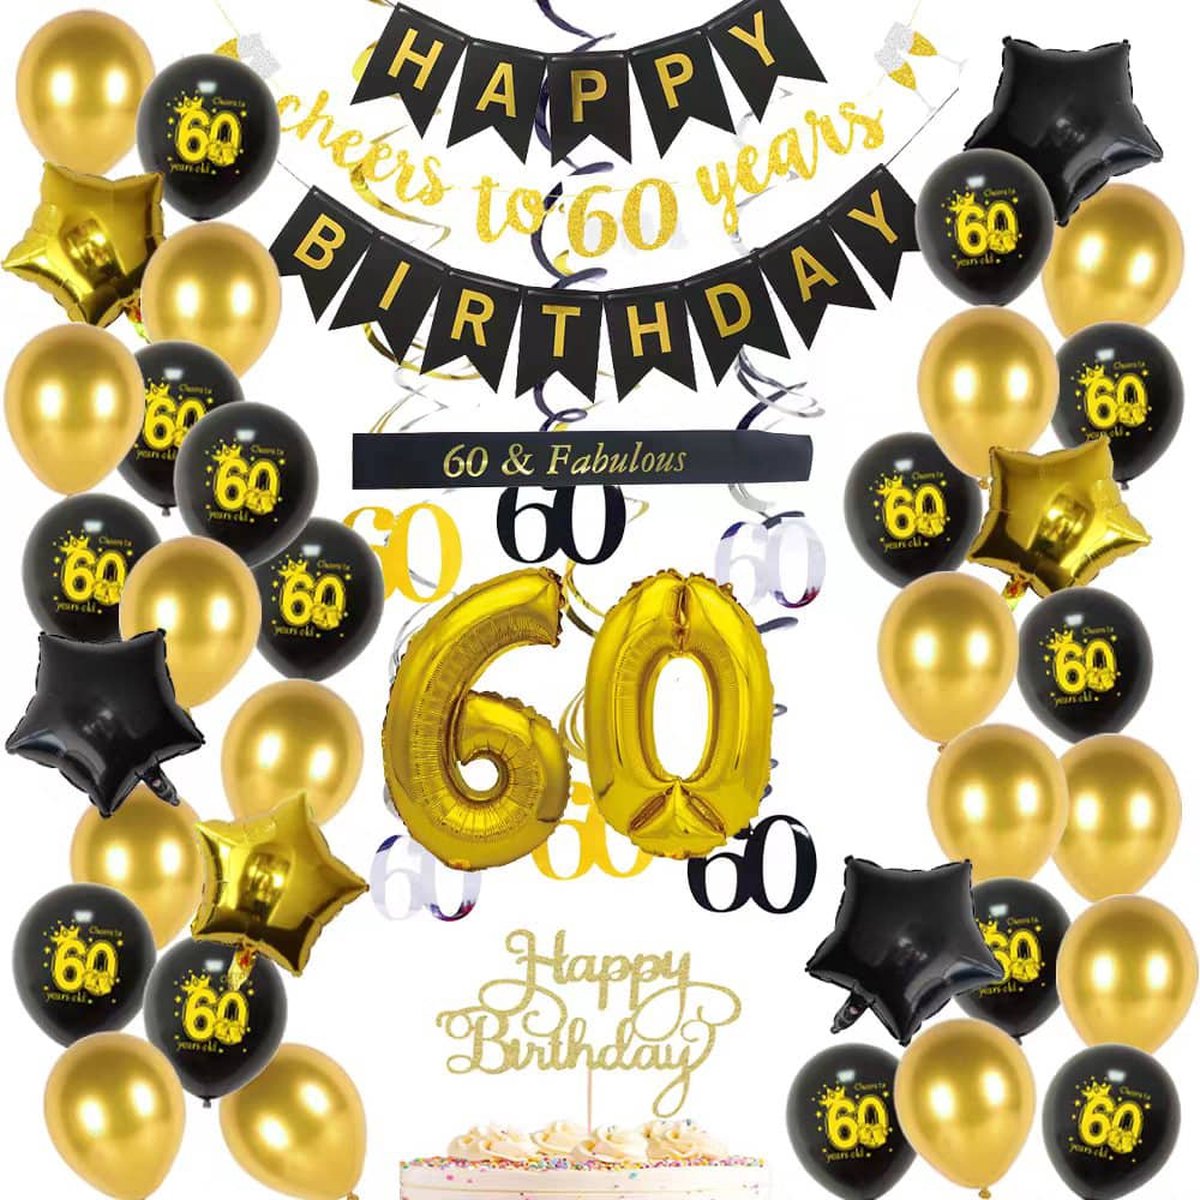 Décoration anniversaire 60 ans - guirlande joyeux anniversaire